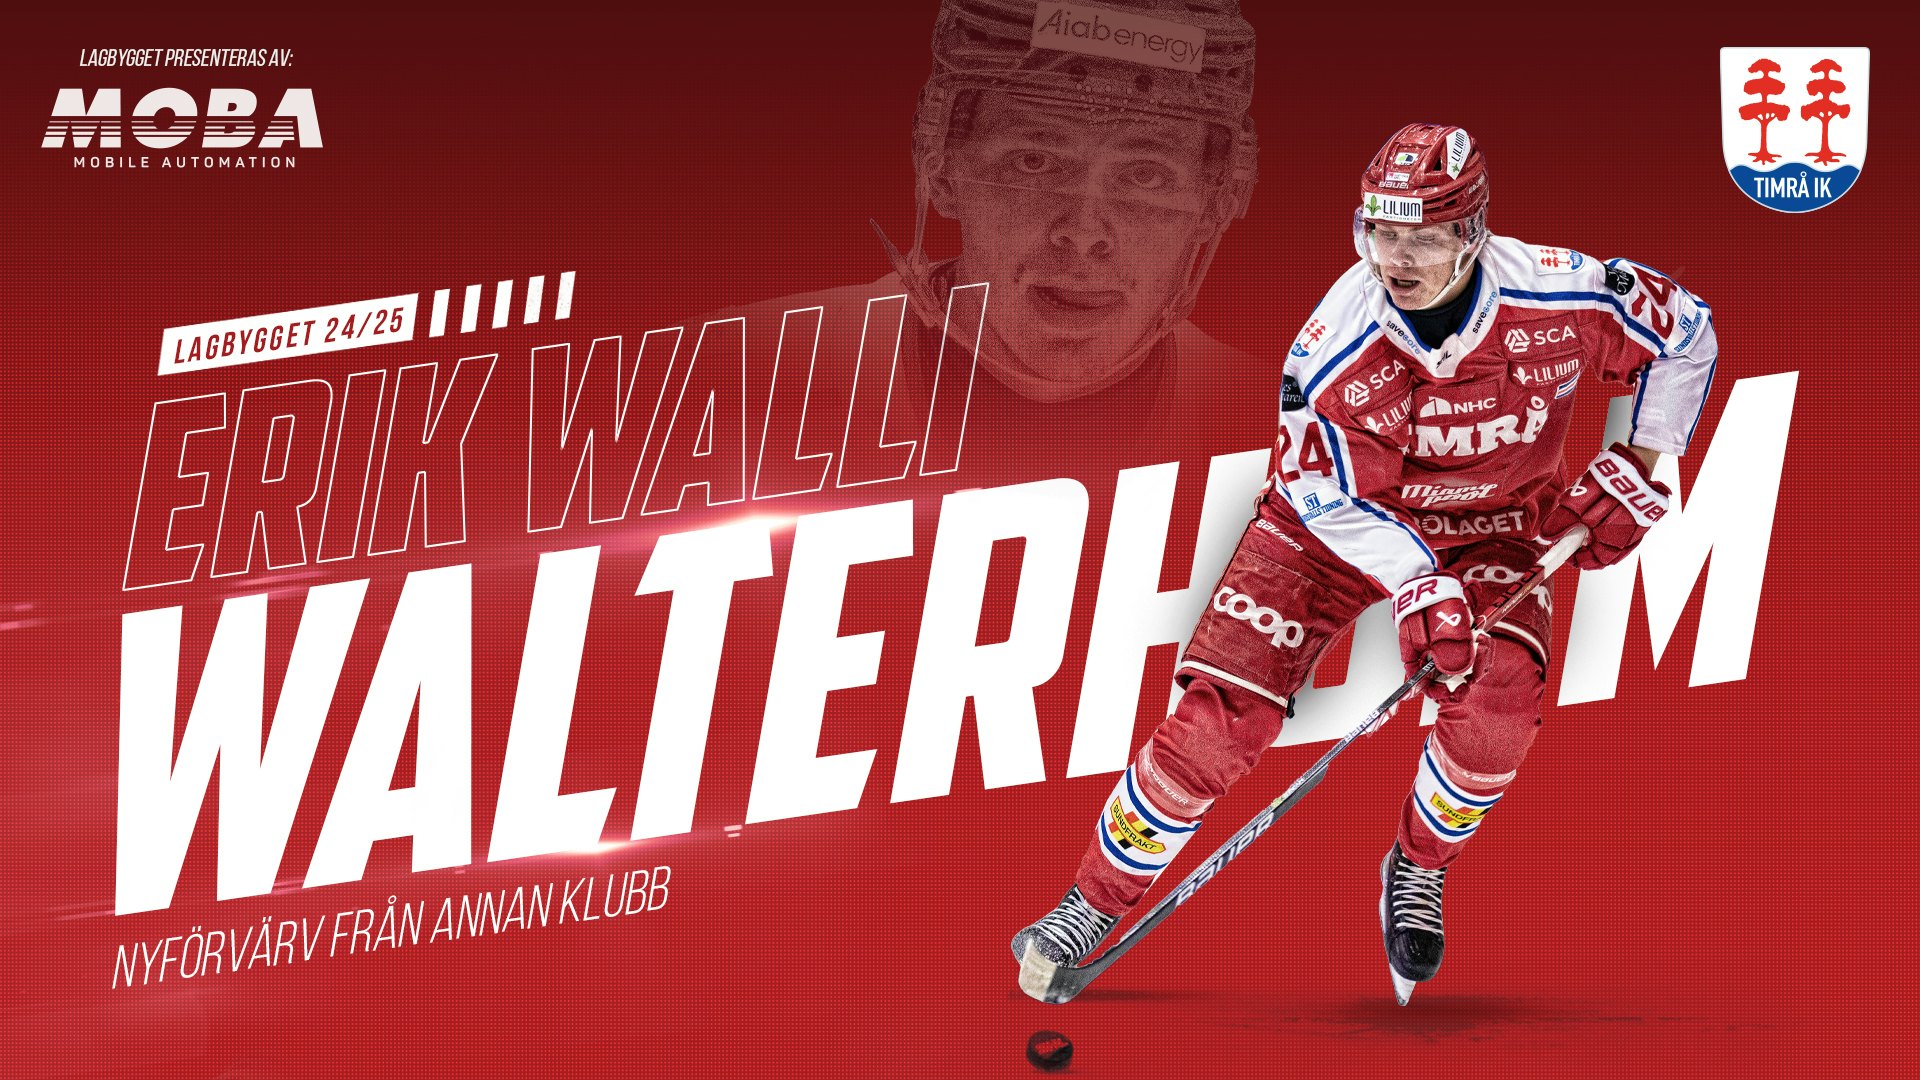 Erik Walli Walterholm är klar för Timrå IK!